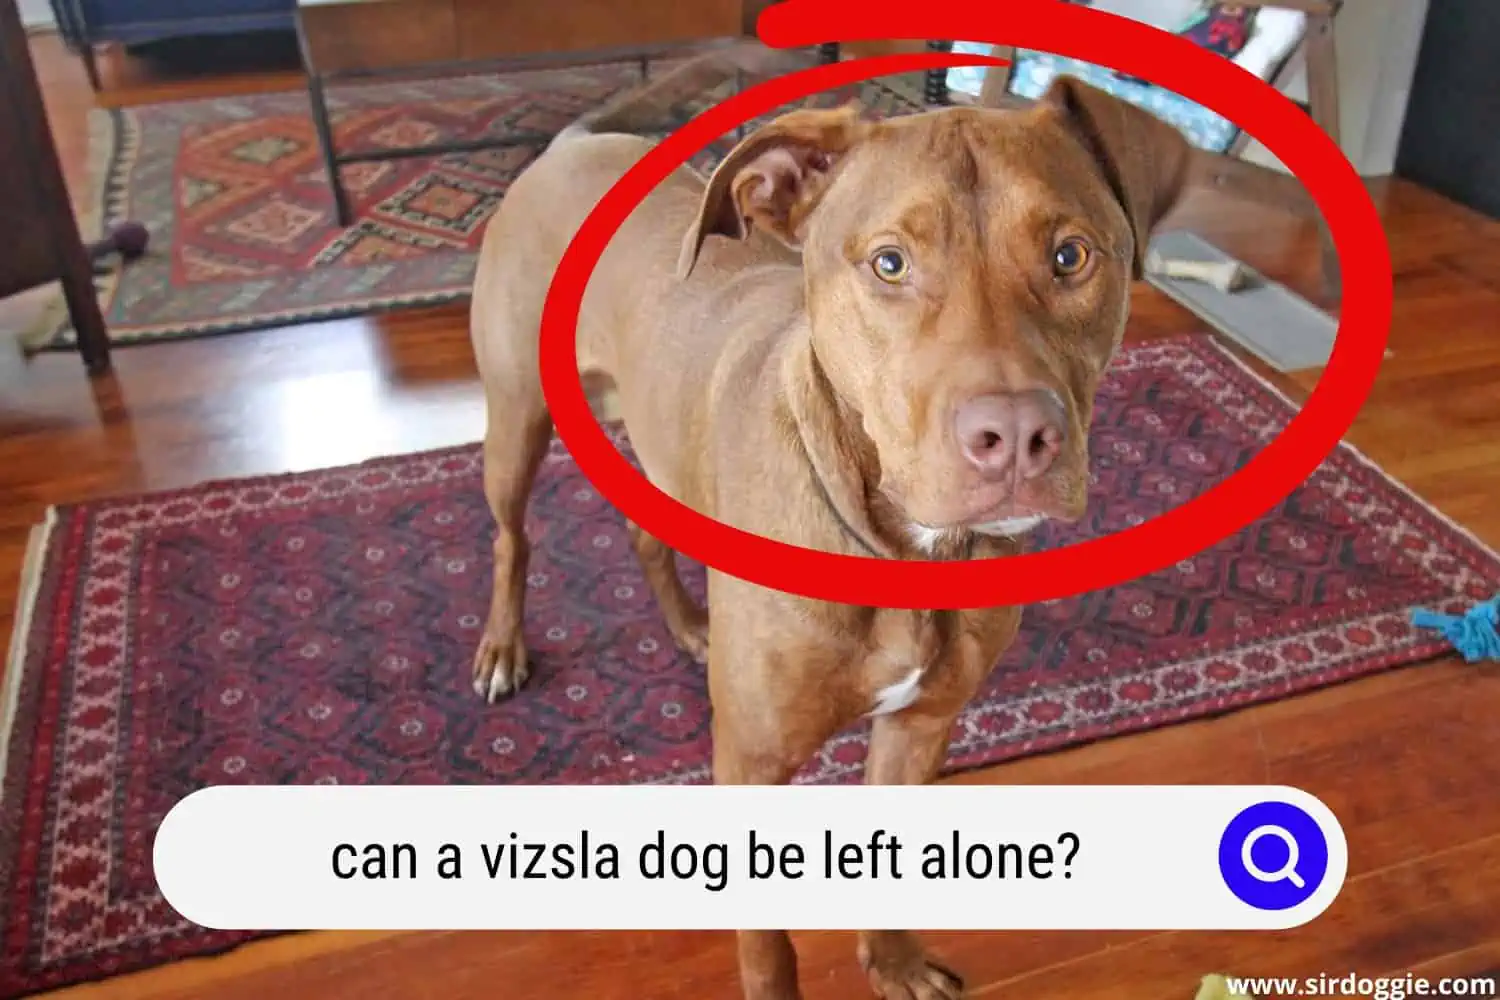 A Vizsla dog alone at home